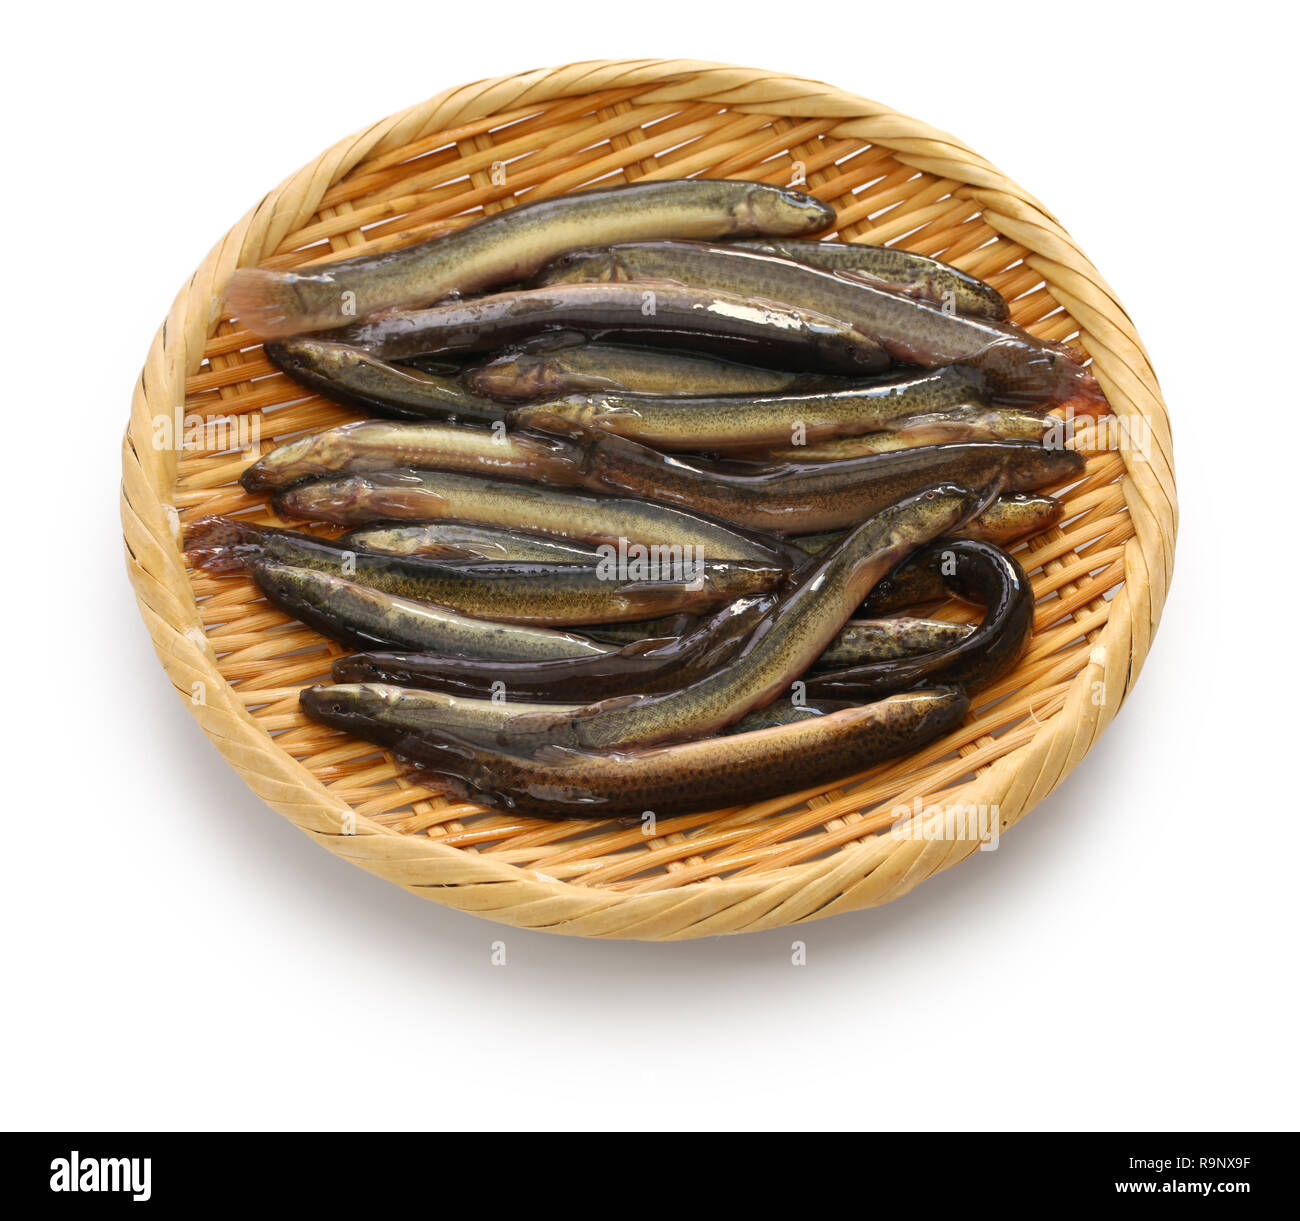 japanese dojo loach fish Stock Photo